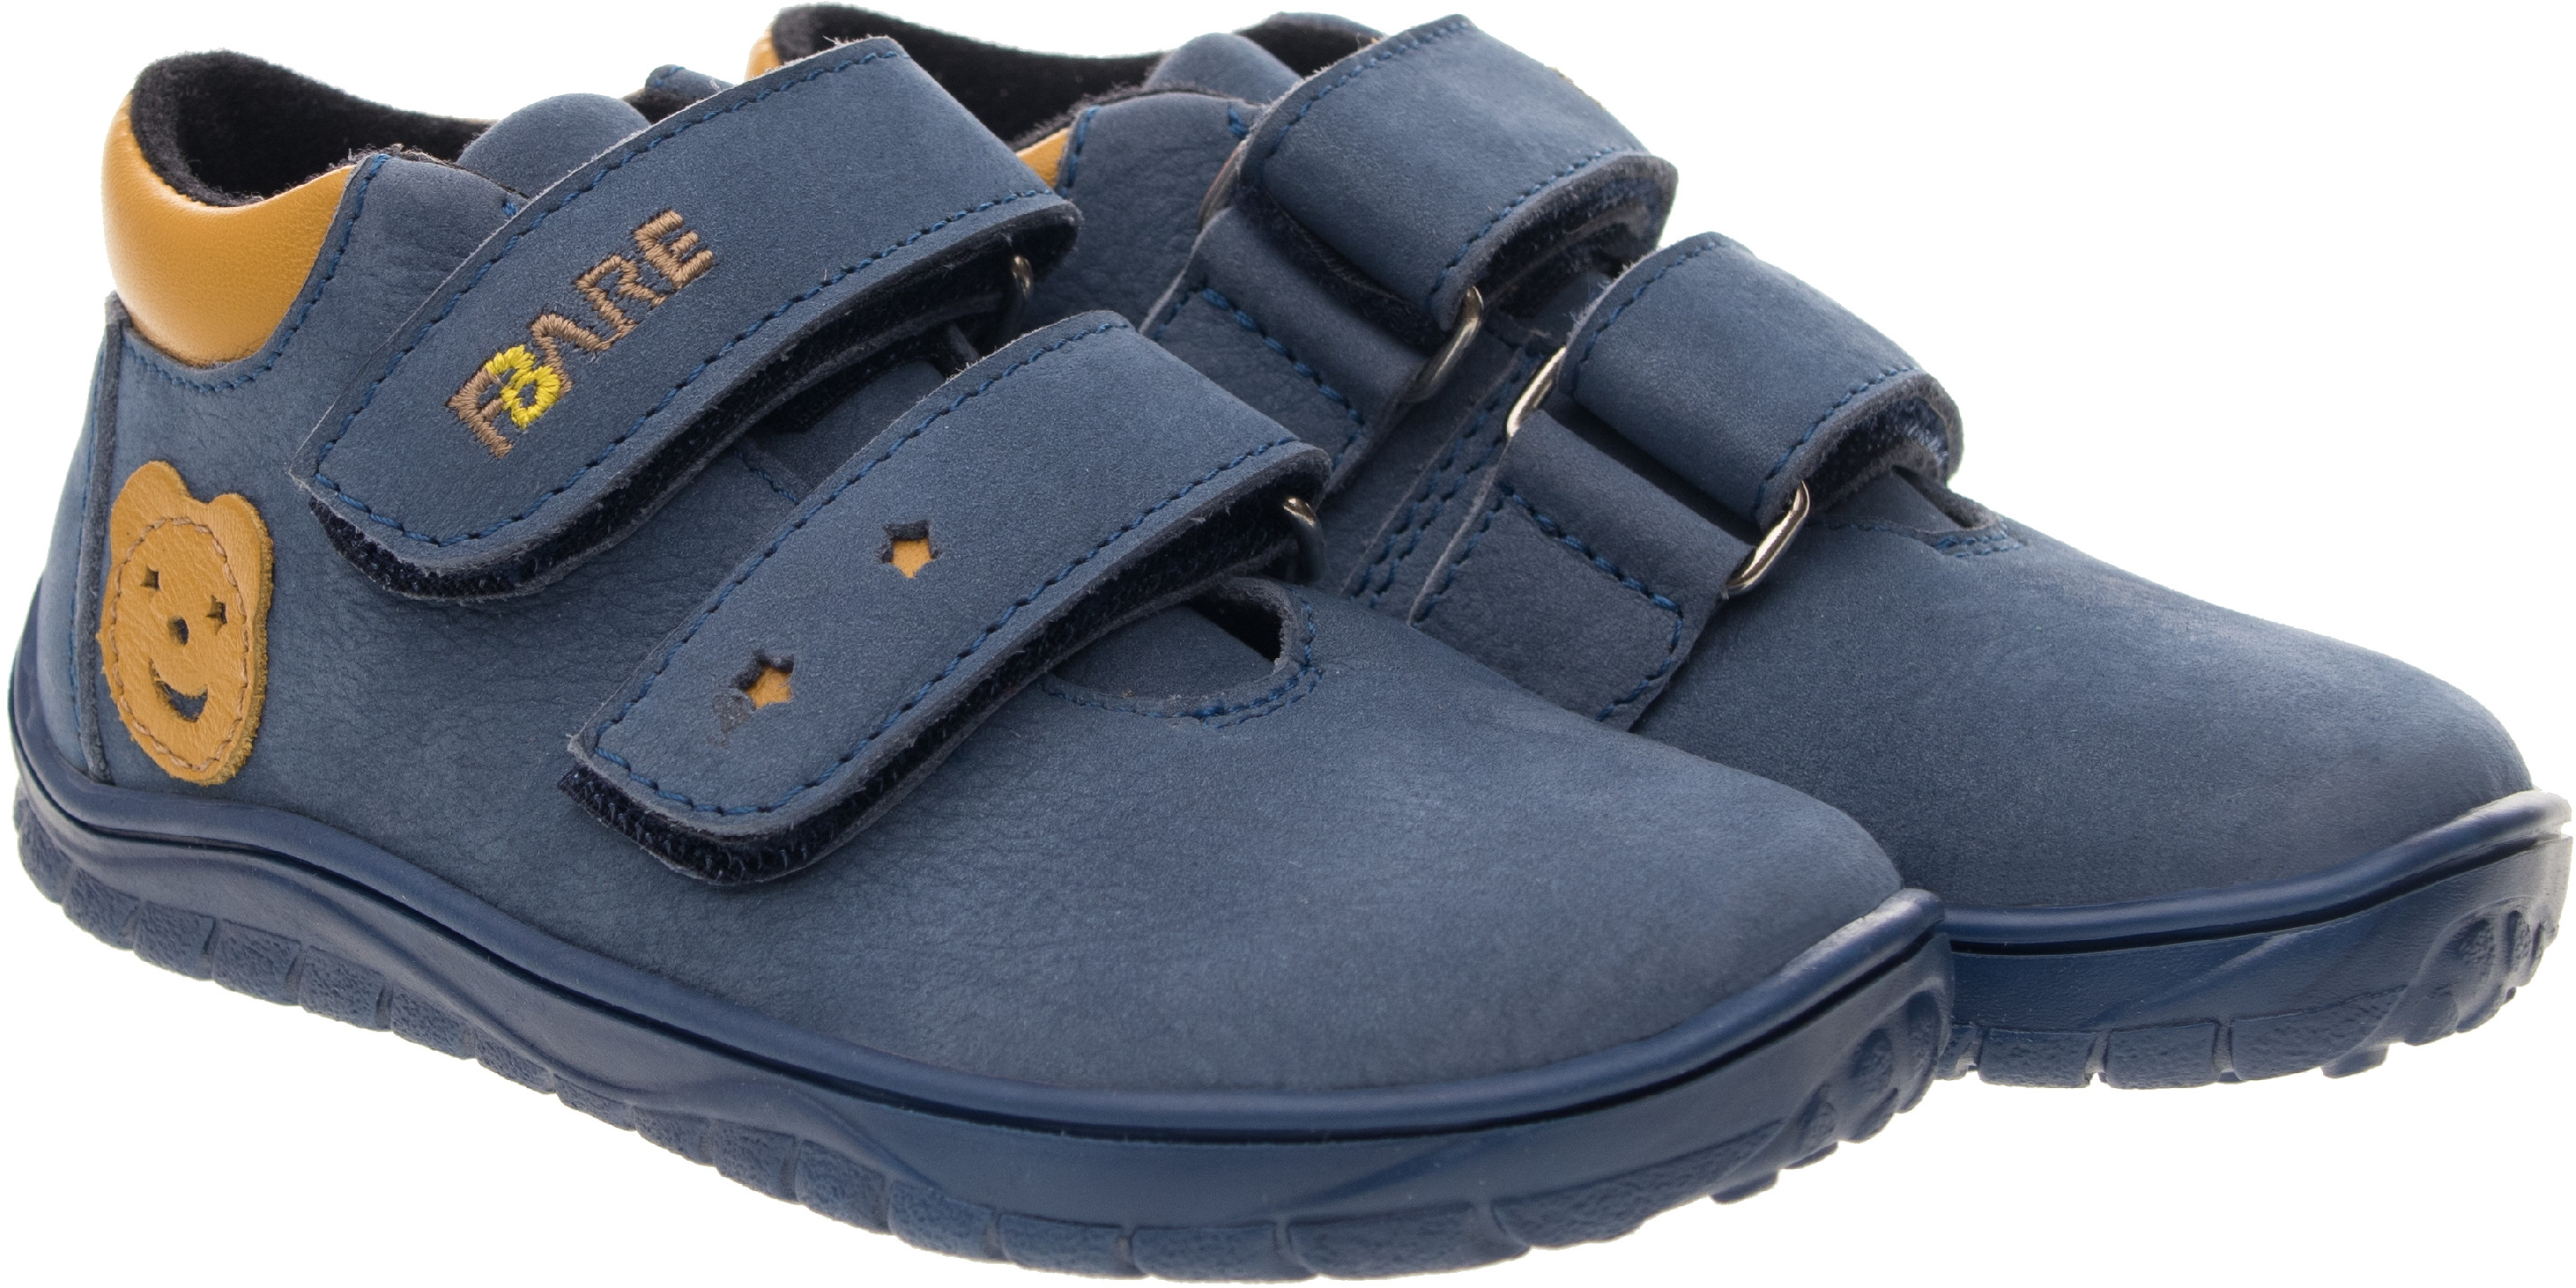 FARE BARE dětské nepromokavé celoroční boty B5426201 Velikost obuvi: 24